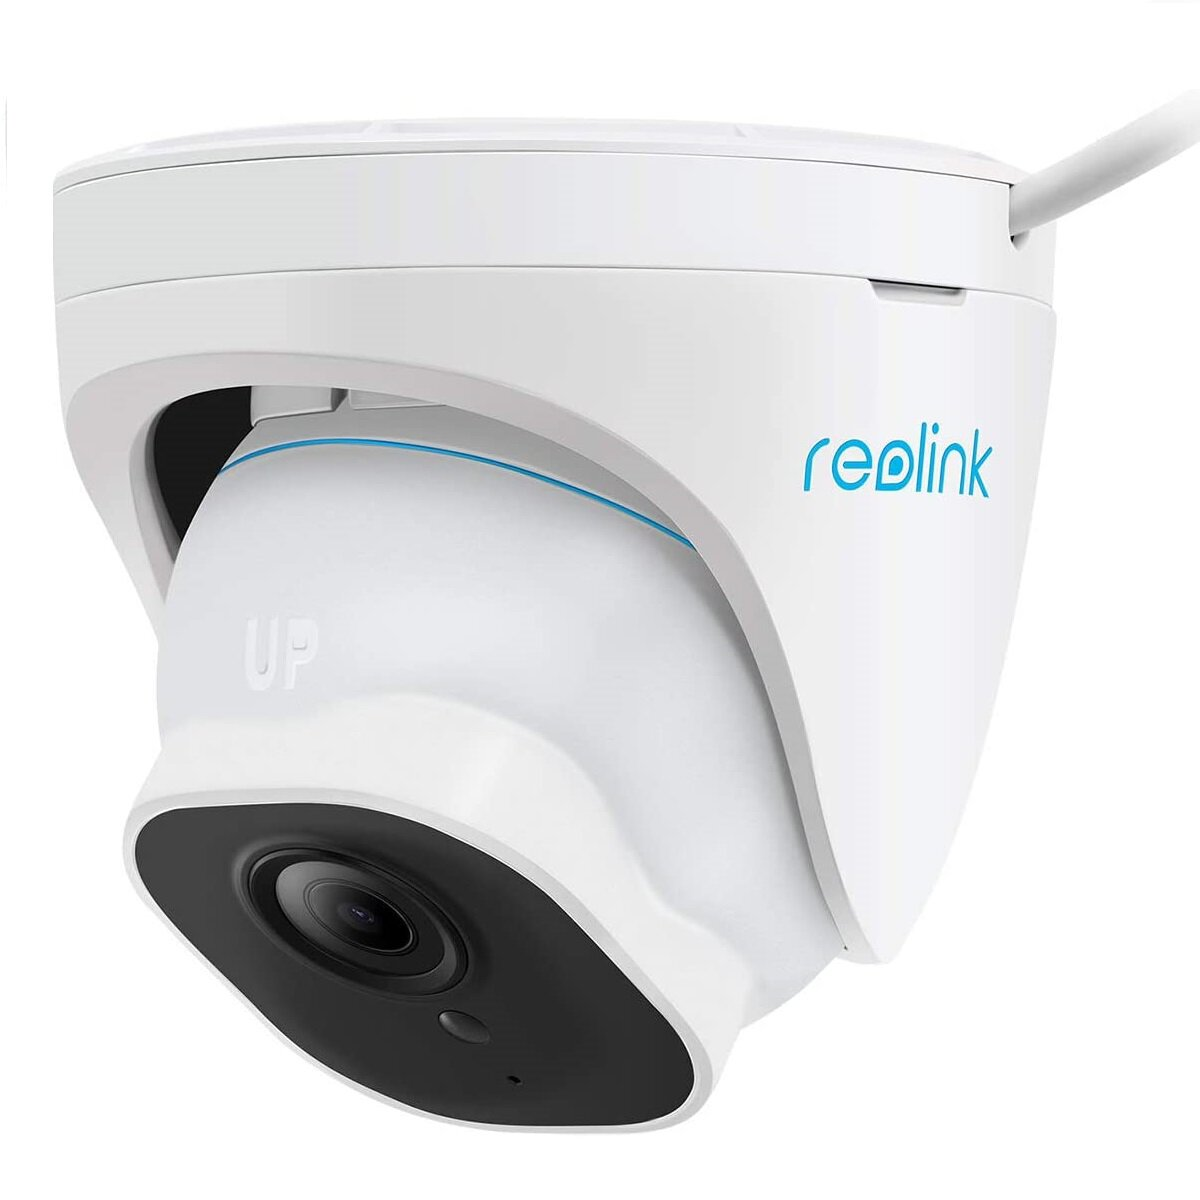 Überwachungskamera, RLC-820A, pixels REOLINK 2160 Auflösung Video: 3840 x